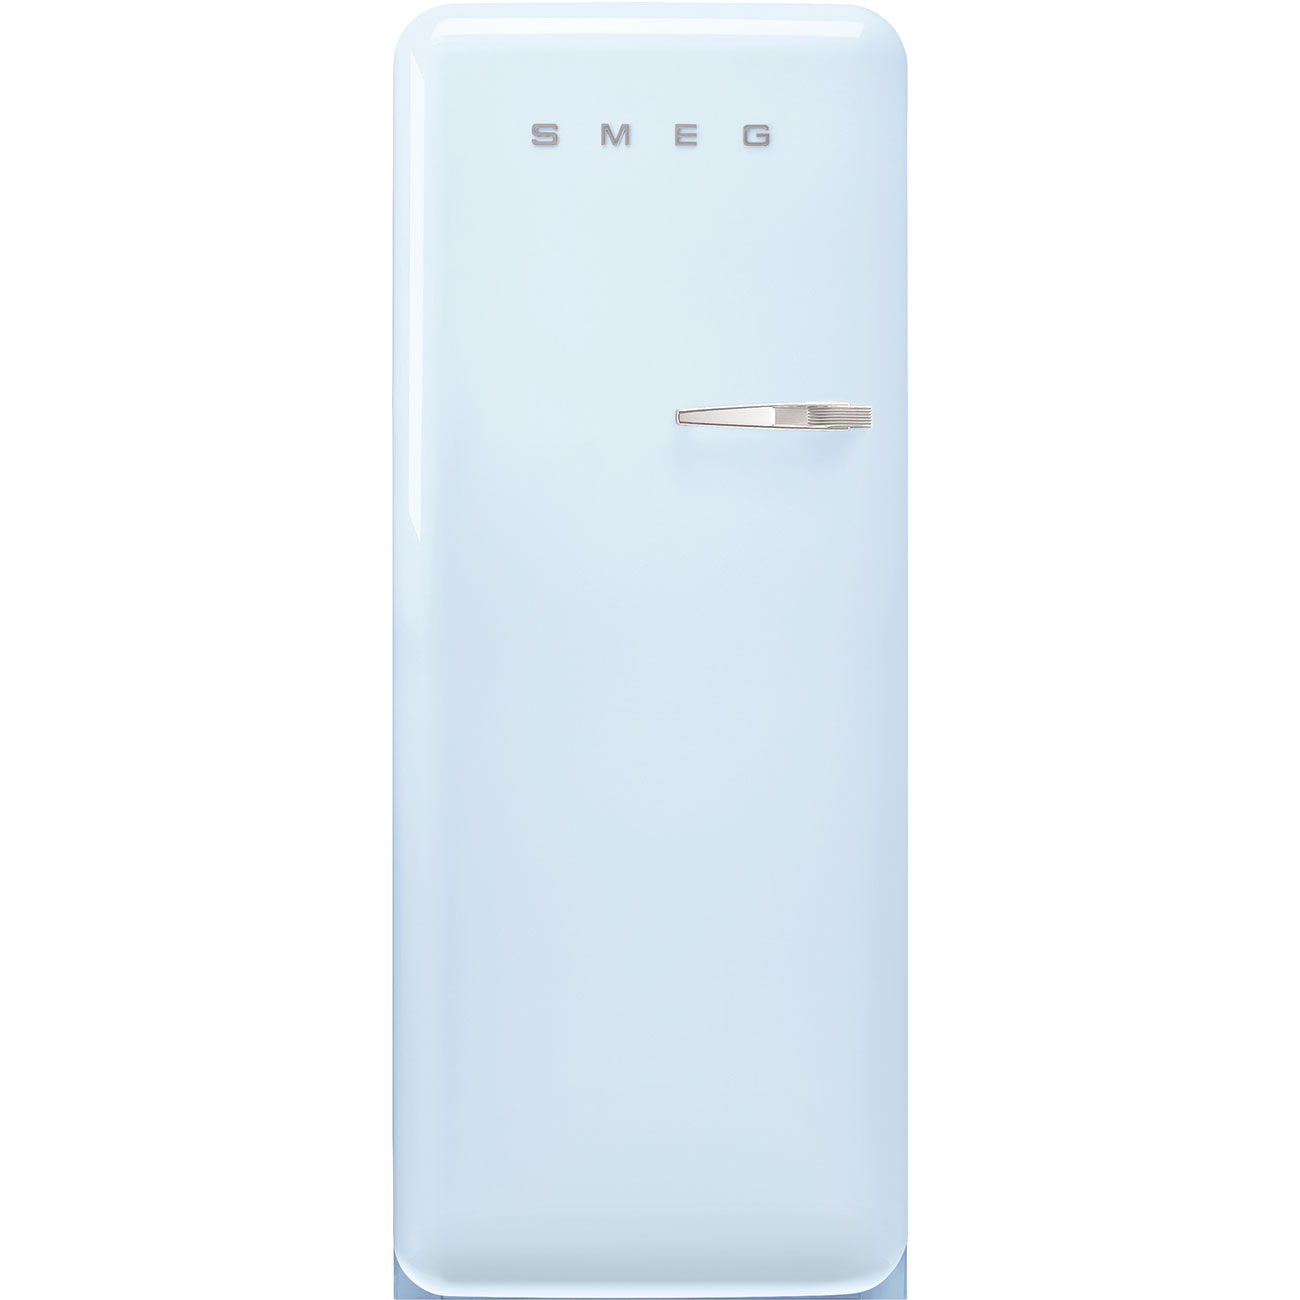 Pastellblau Retro-Kühlschränke von Smeg_1